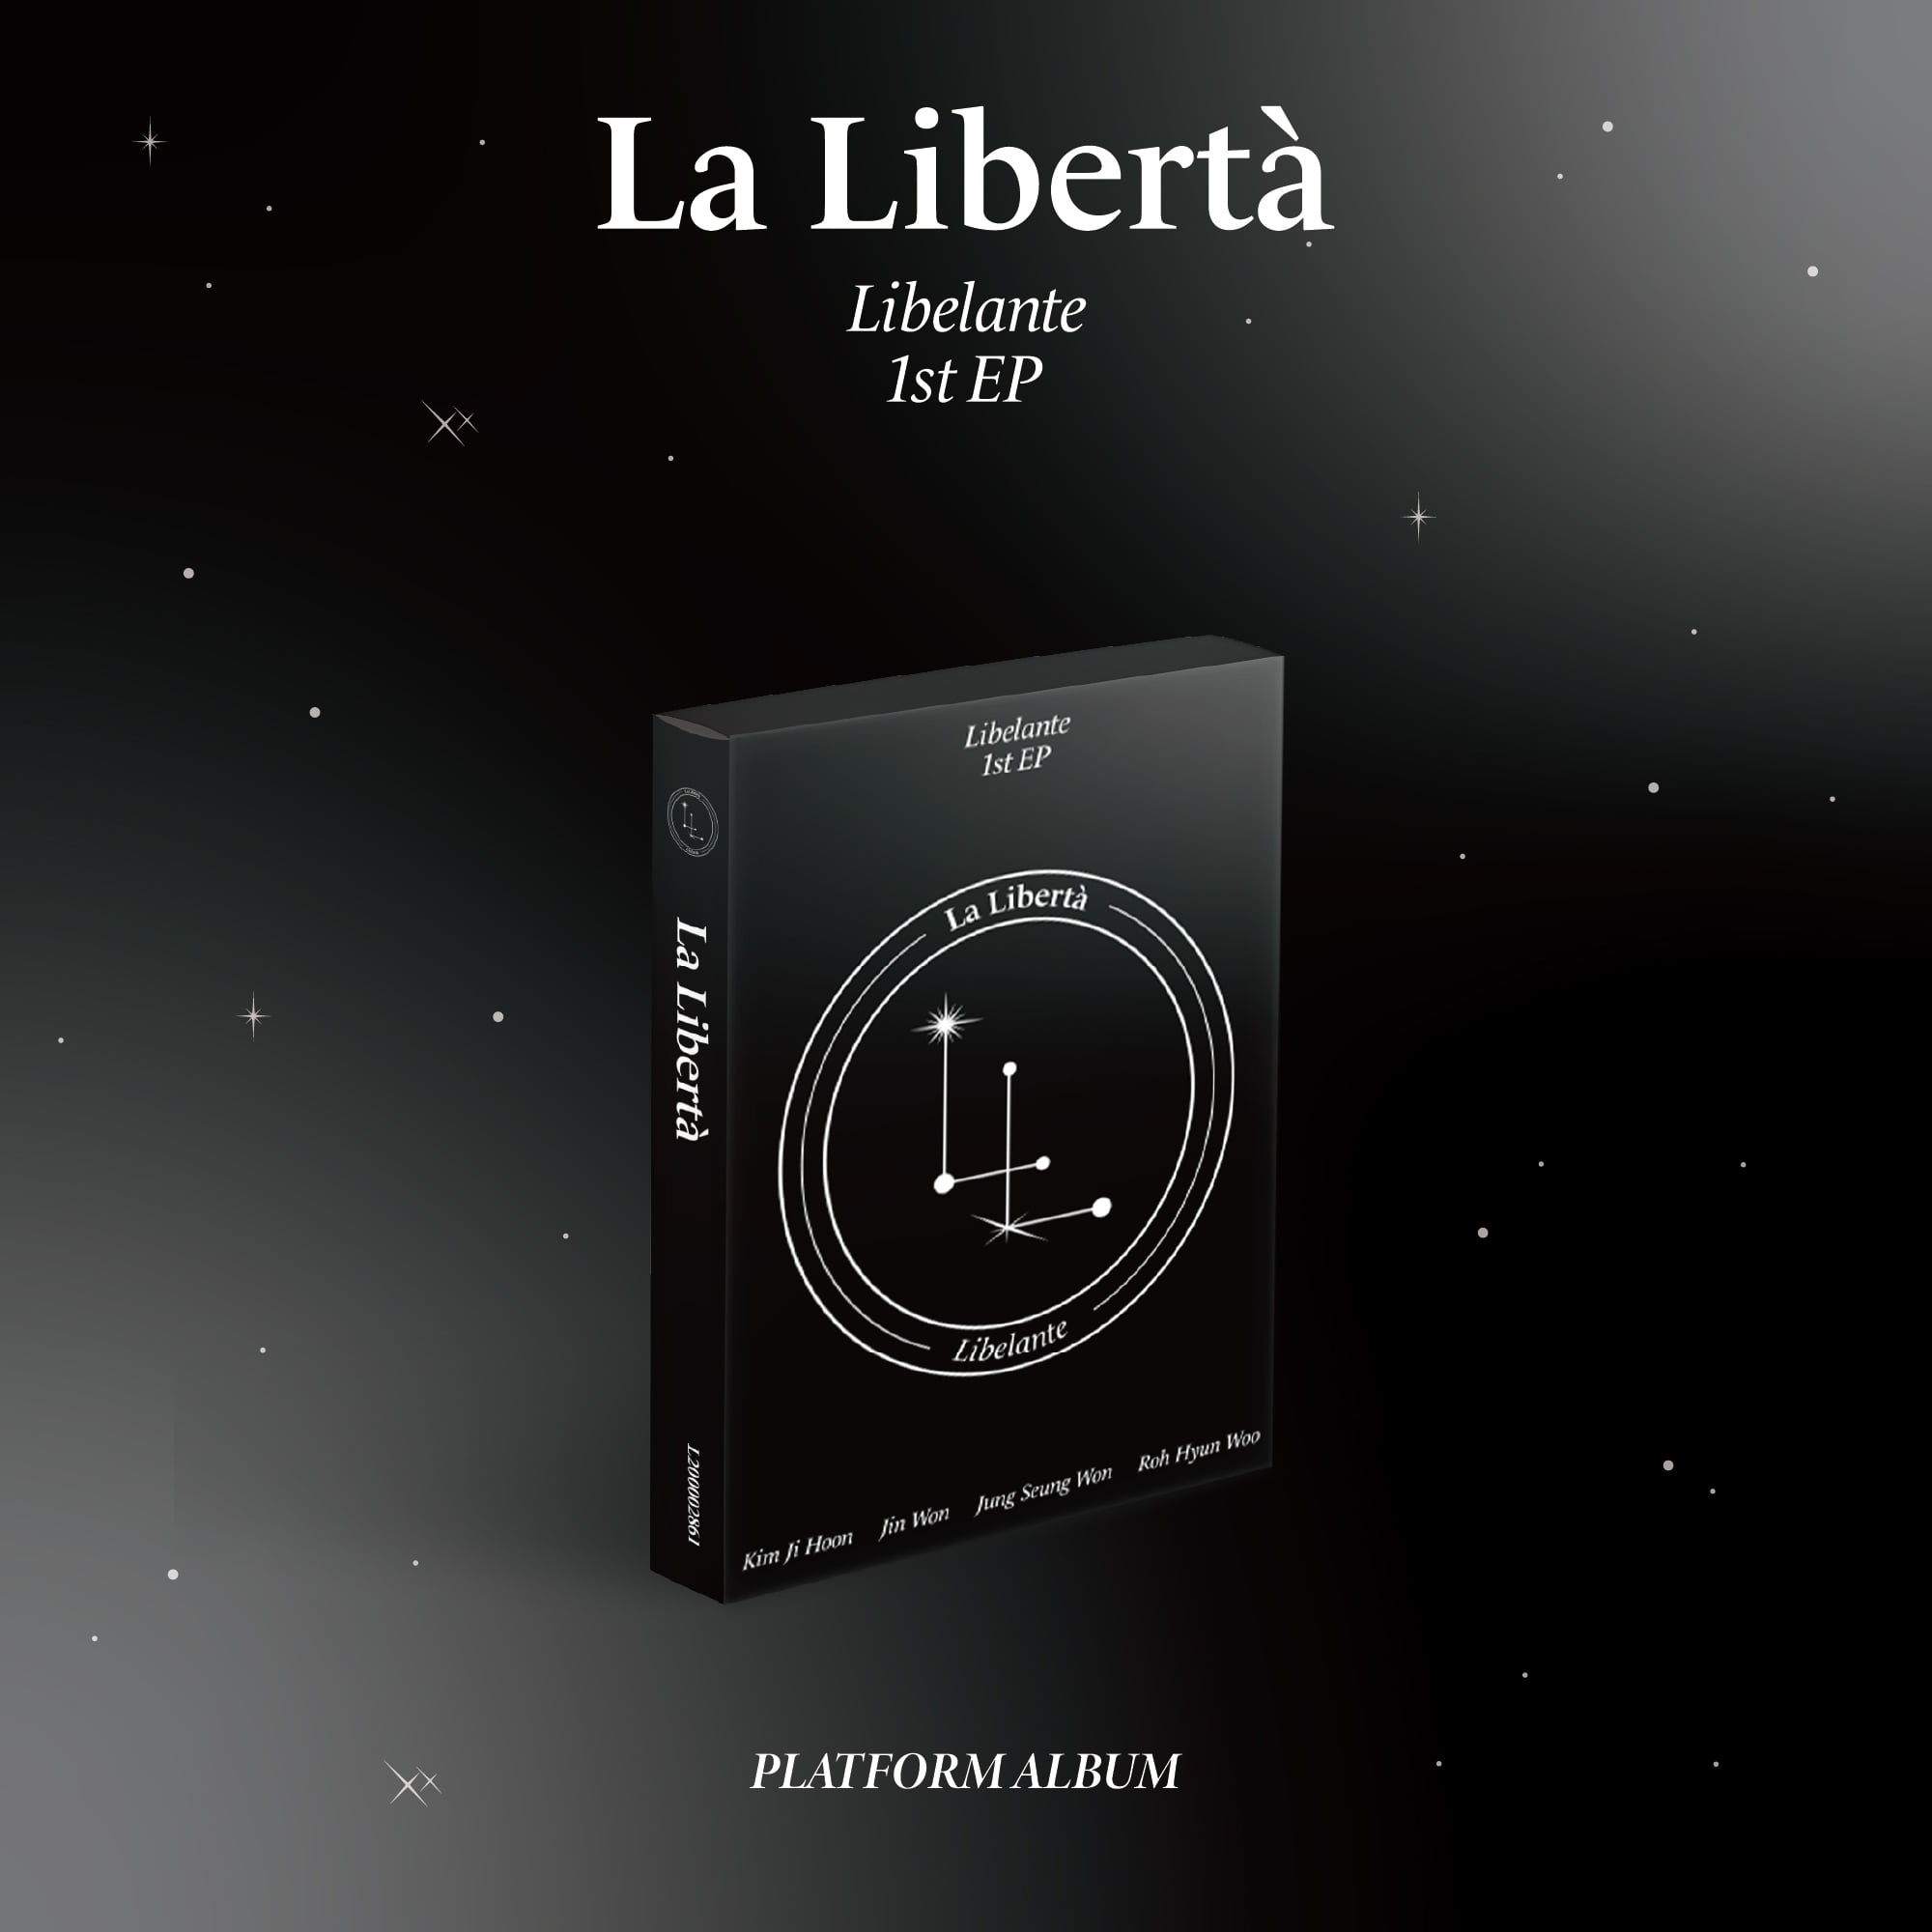 리베란테(Libelante) 1st EP [La Libertà] (Platform ver.)